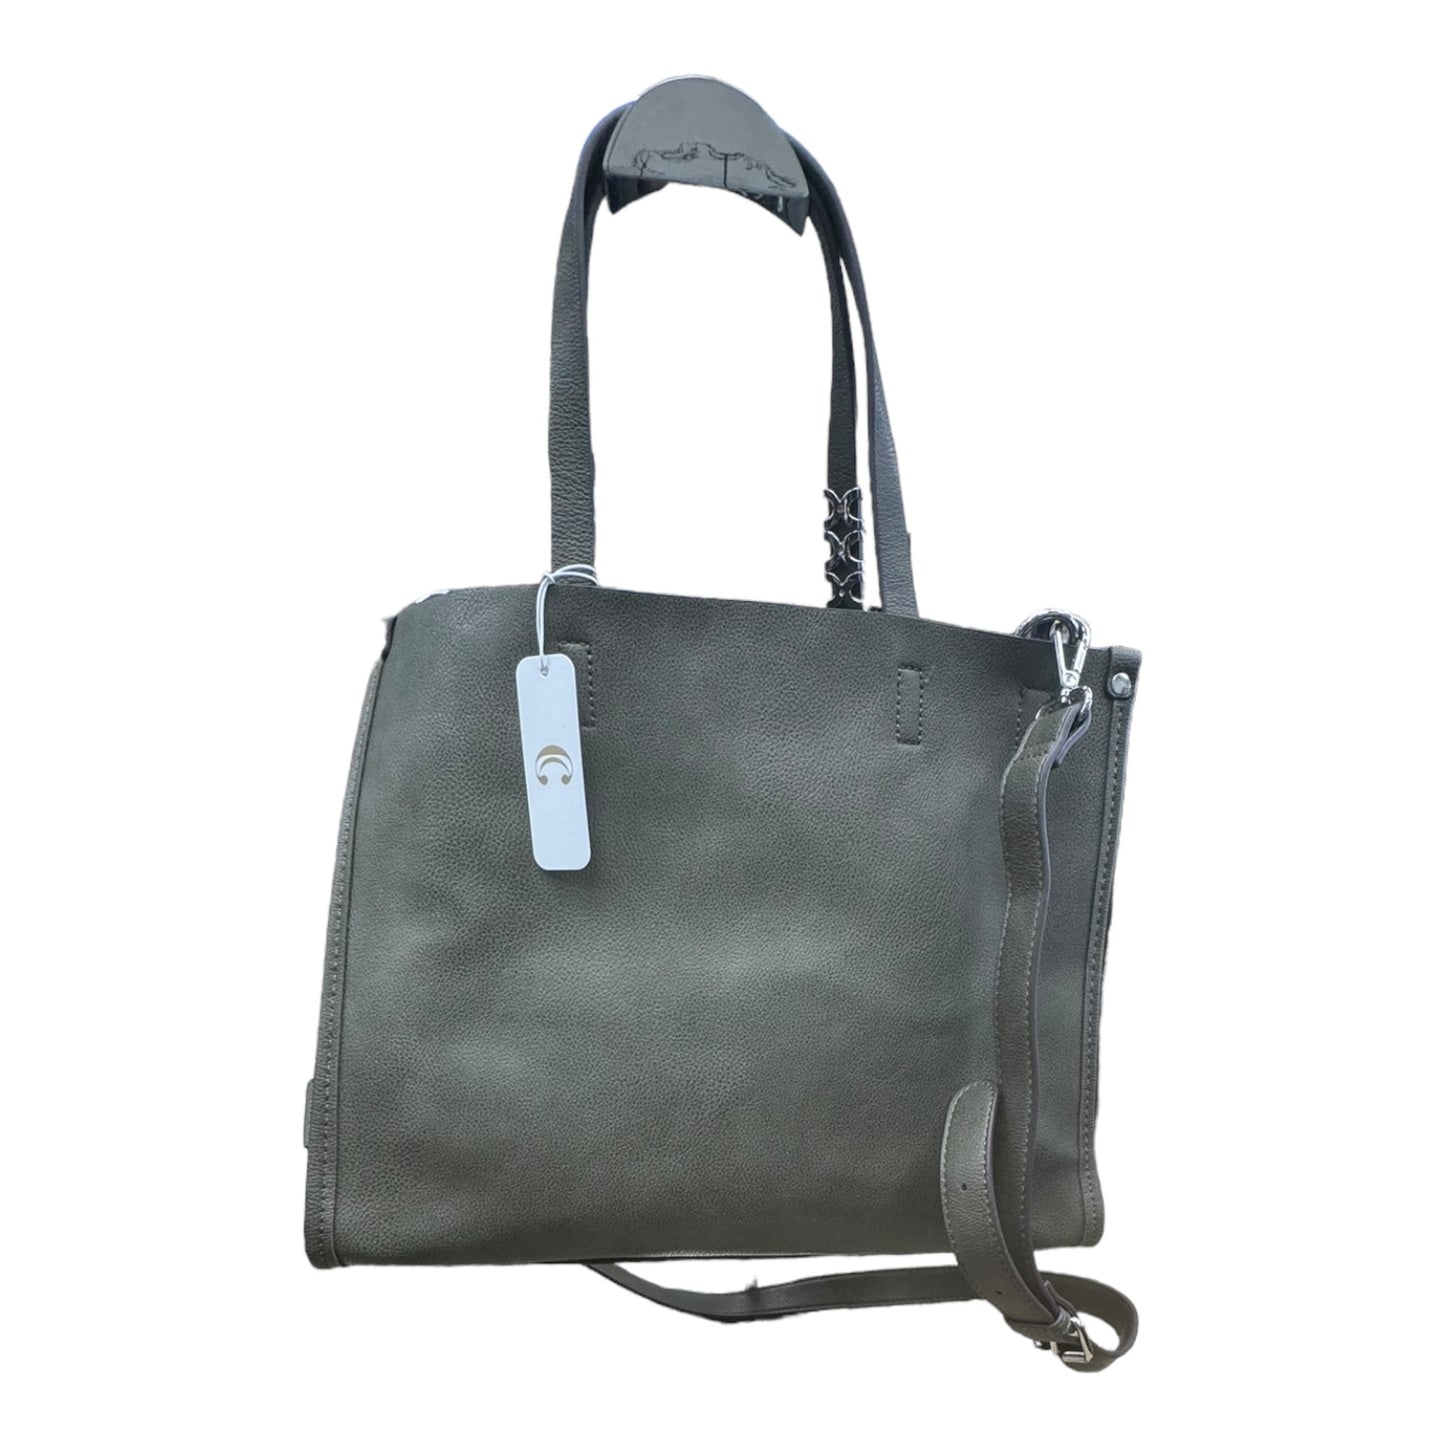 Handbag By Charlie B  Size: Medium